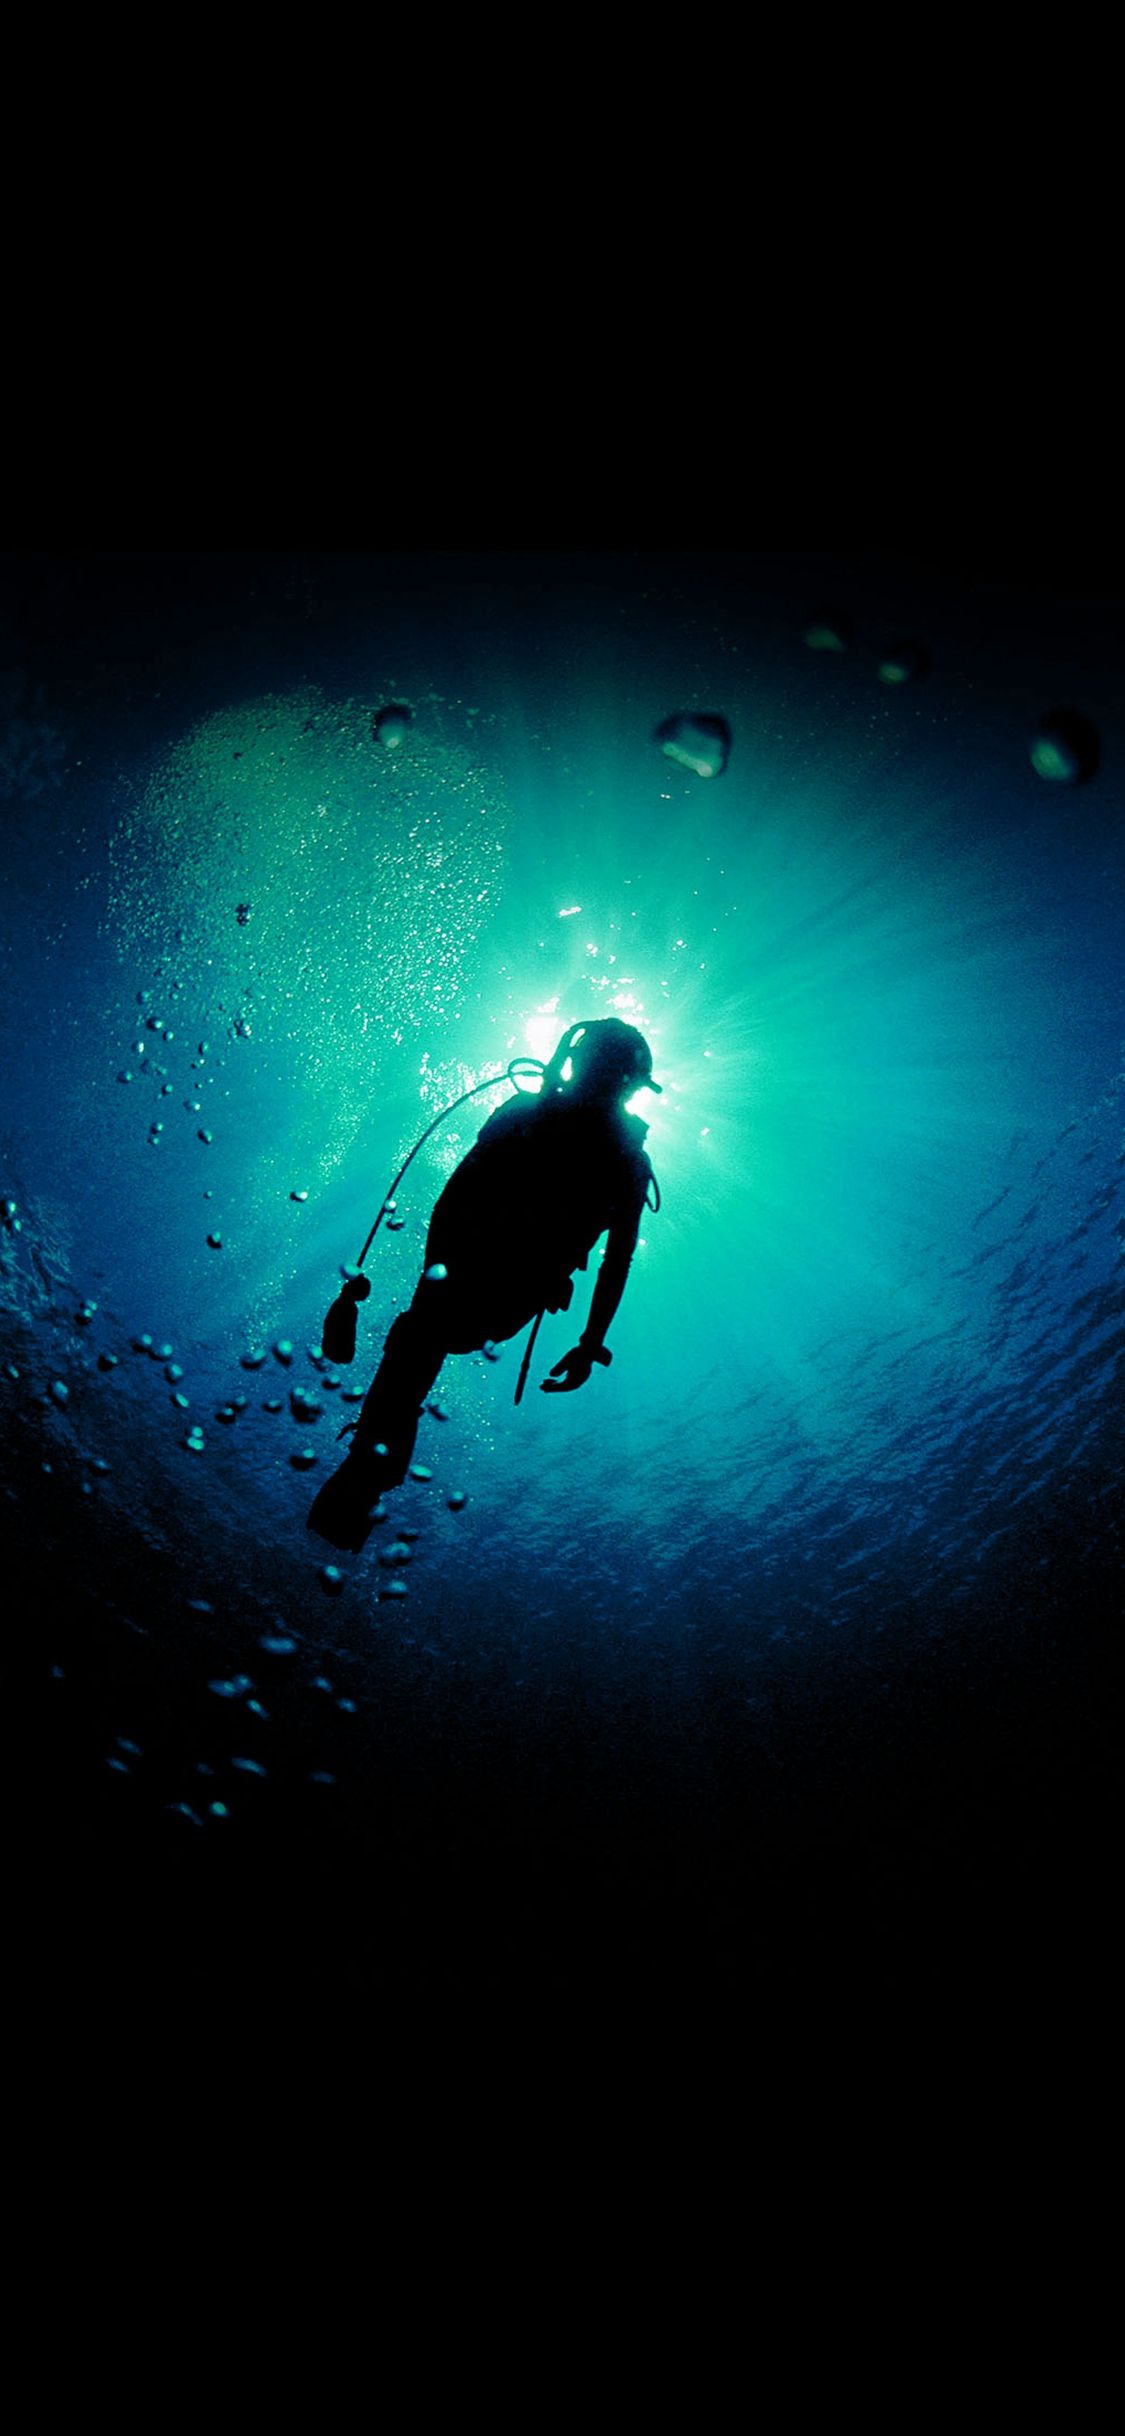 عکس استوک هنری غواص در آب با بهترین کیفیت دانلود